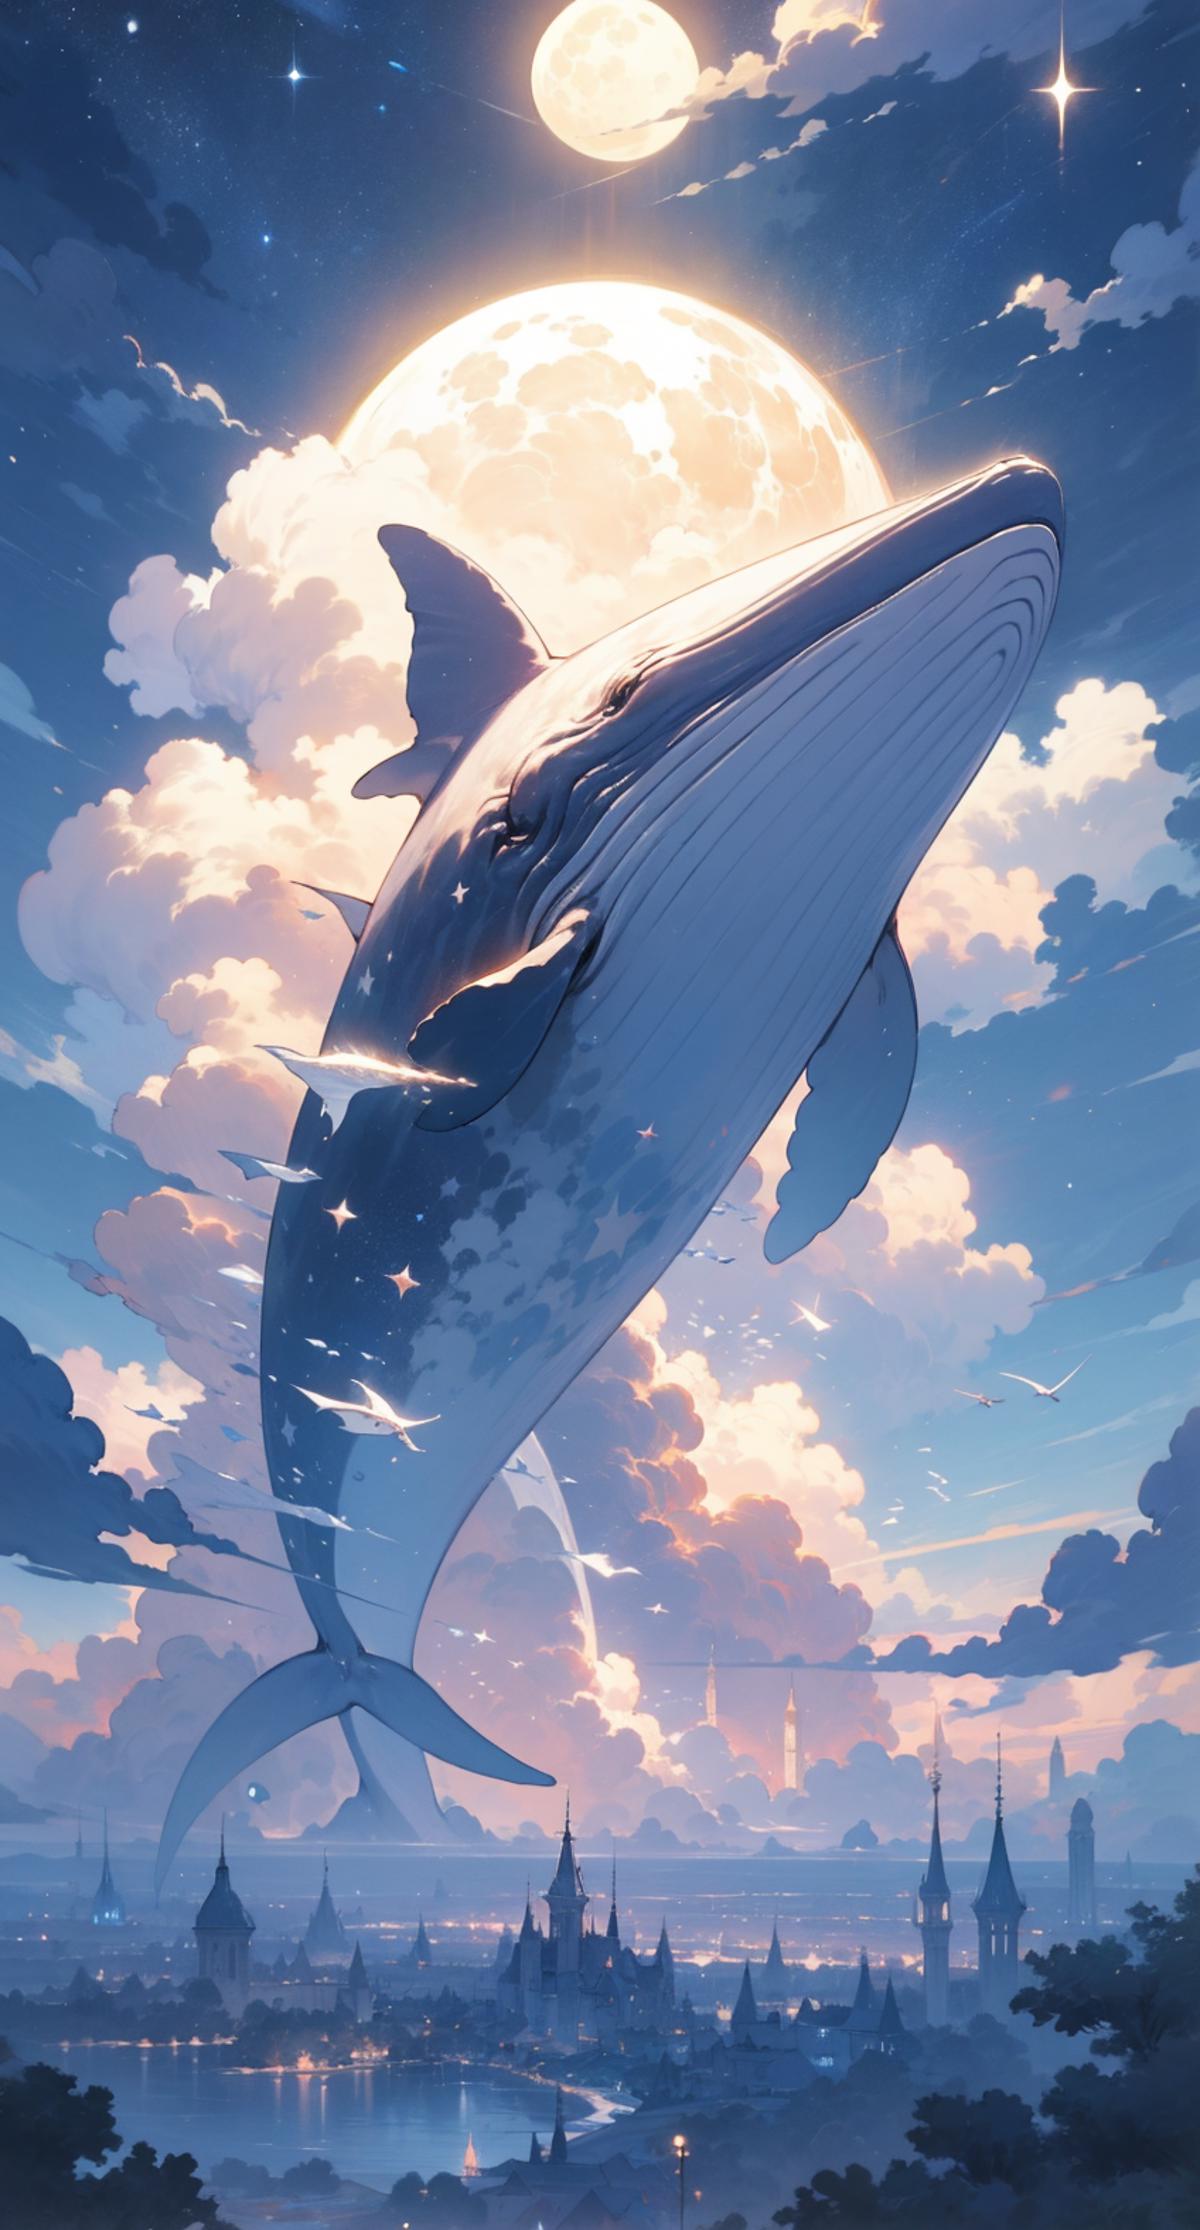 [LoRa] Cloudwhale / 雲鯨 Concept image by L_A_X